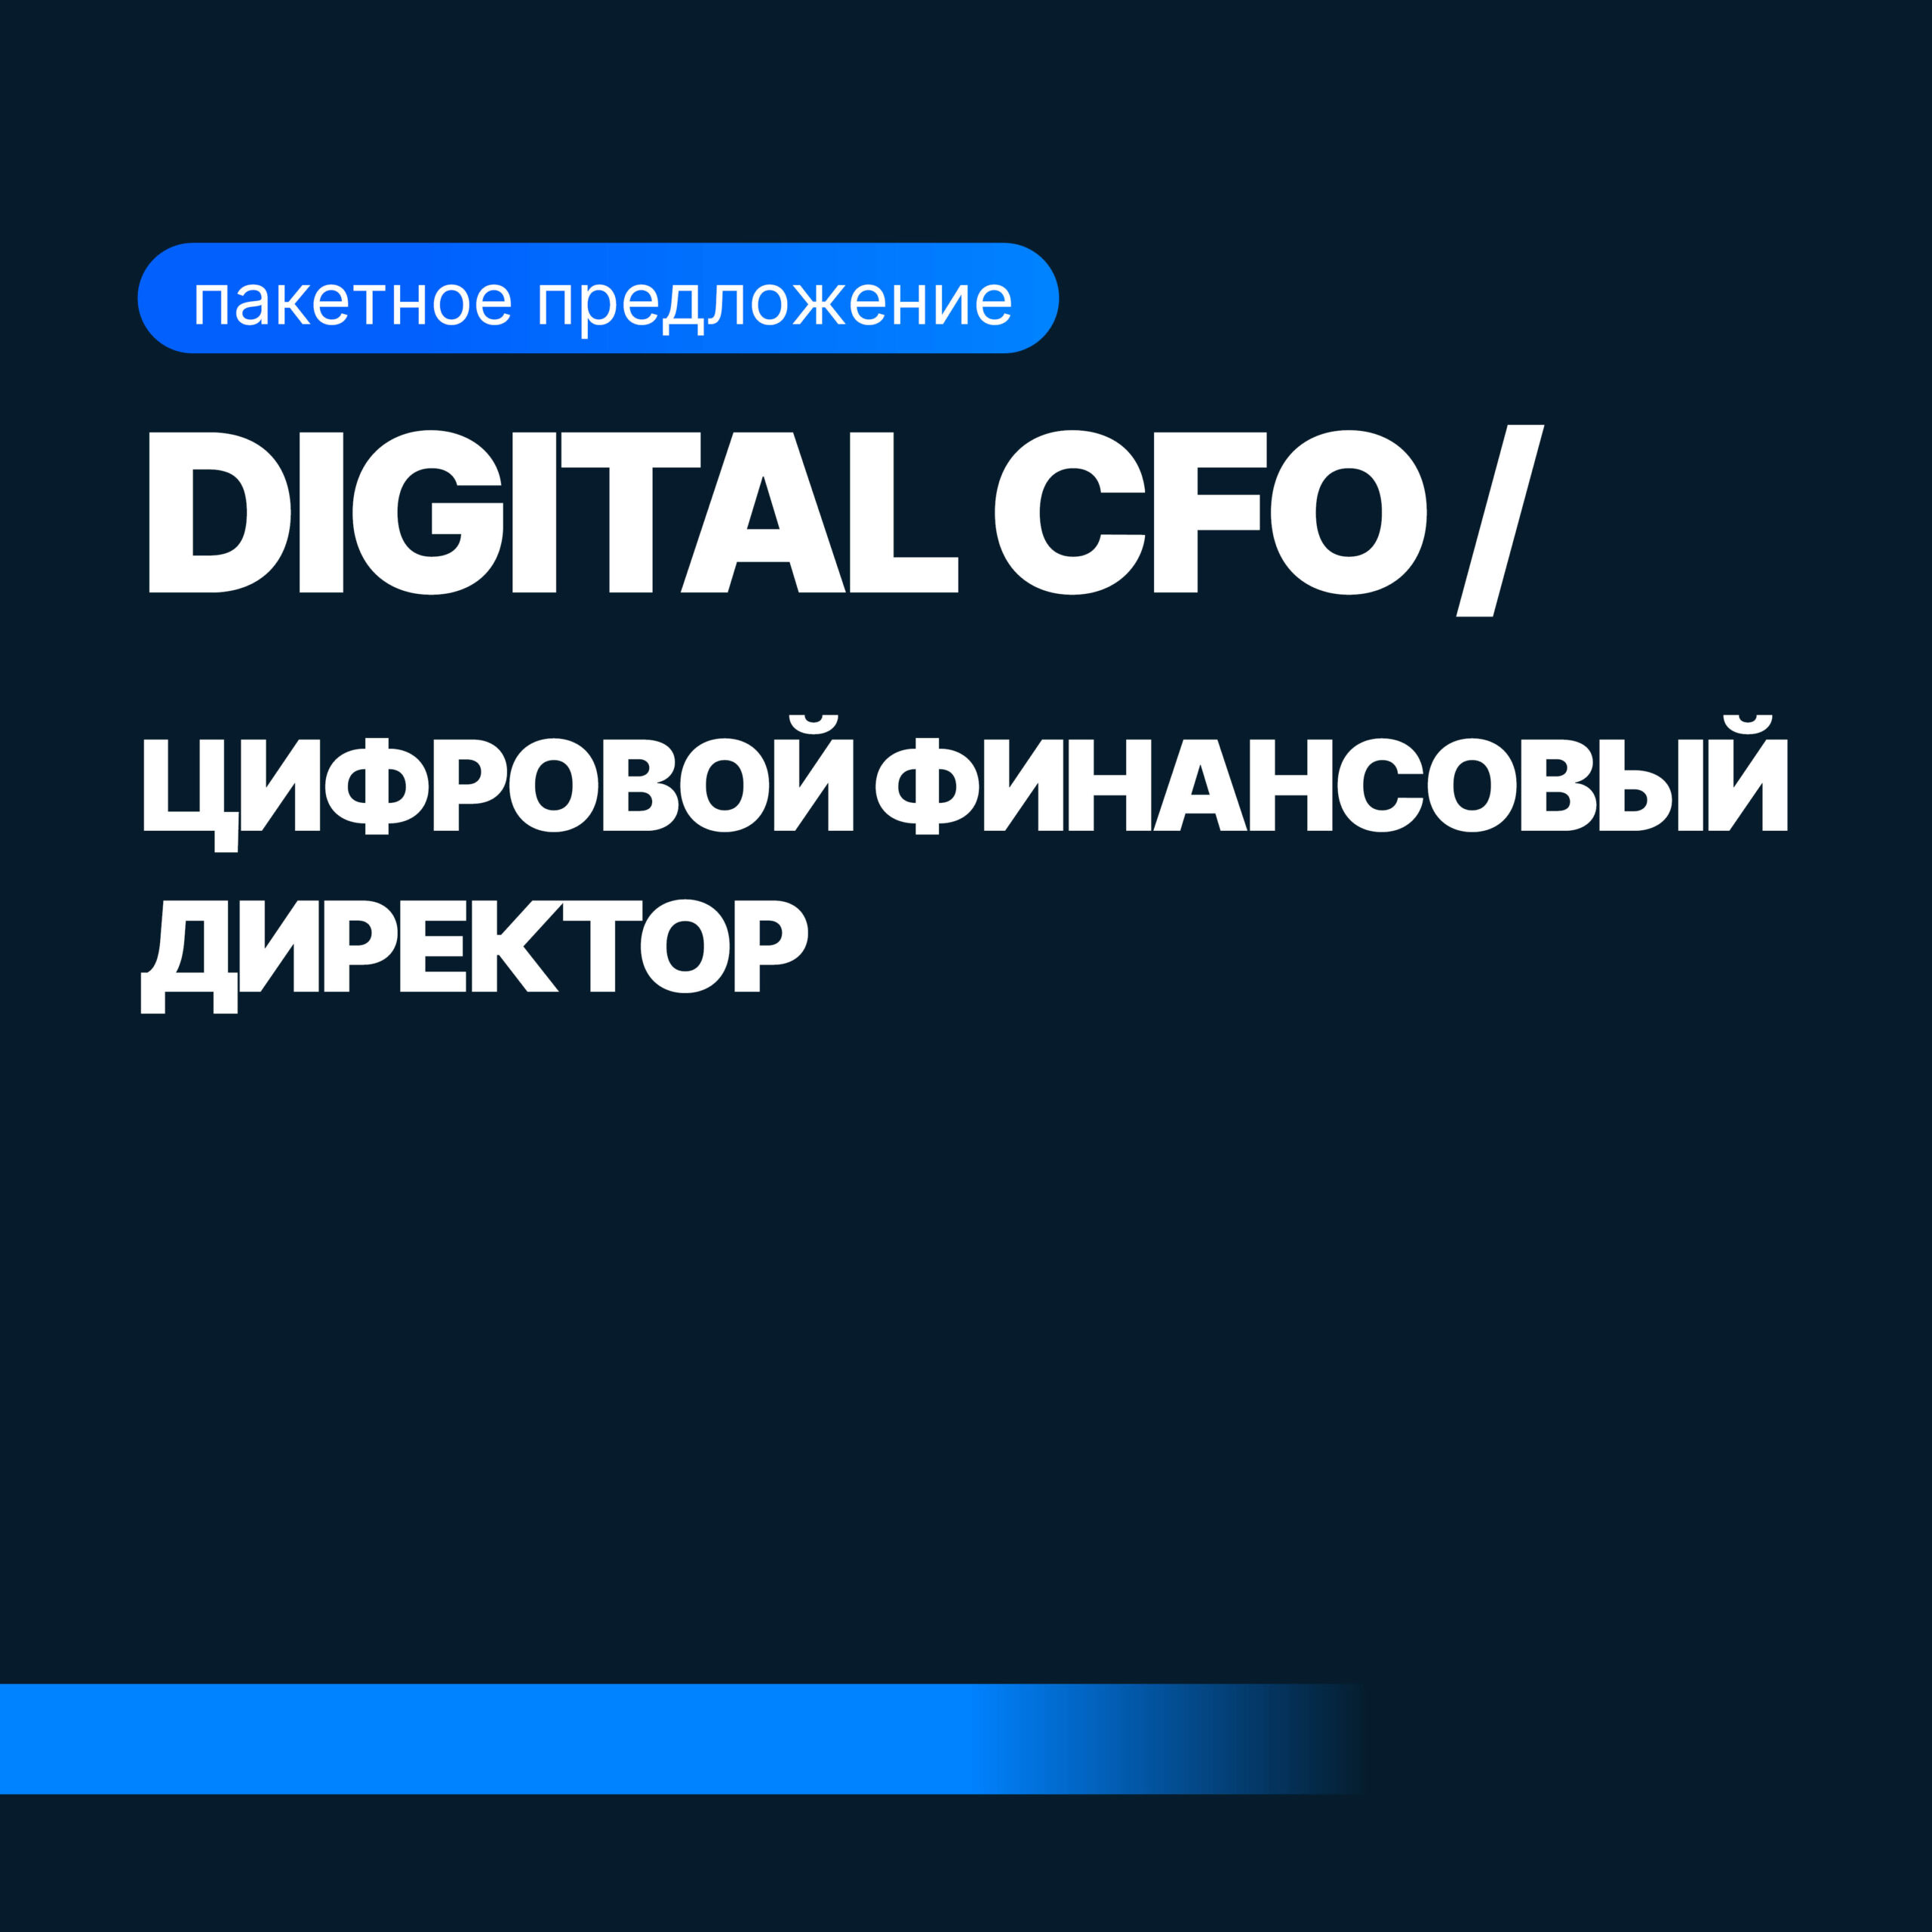 Digital CFO (Финансовый Директор + Бизнес-аналитик)